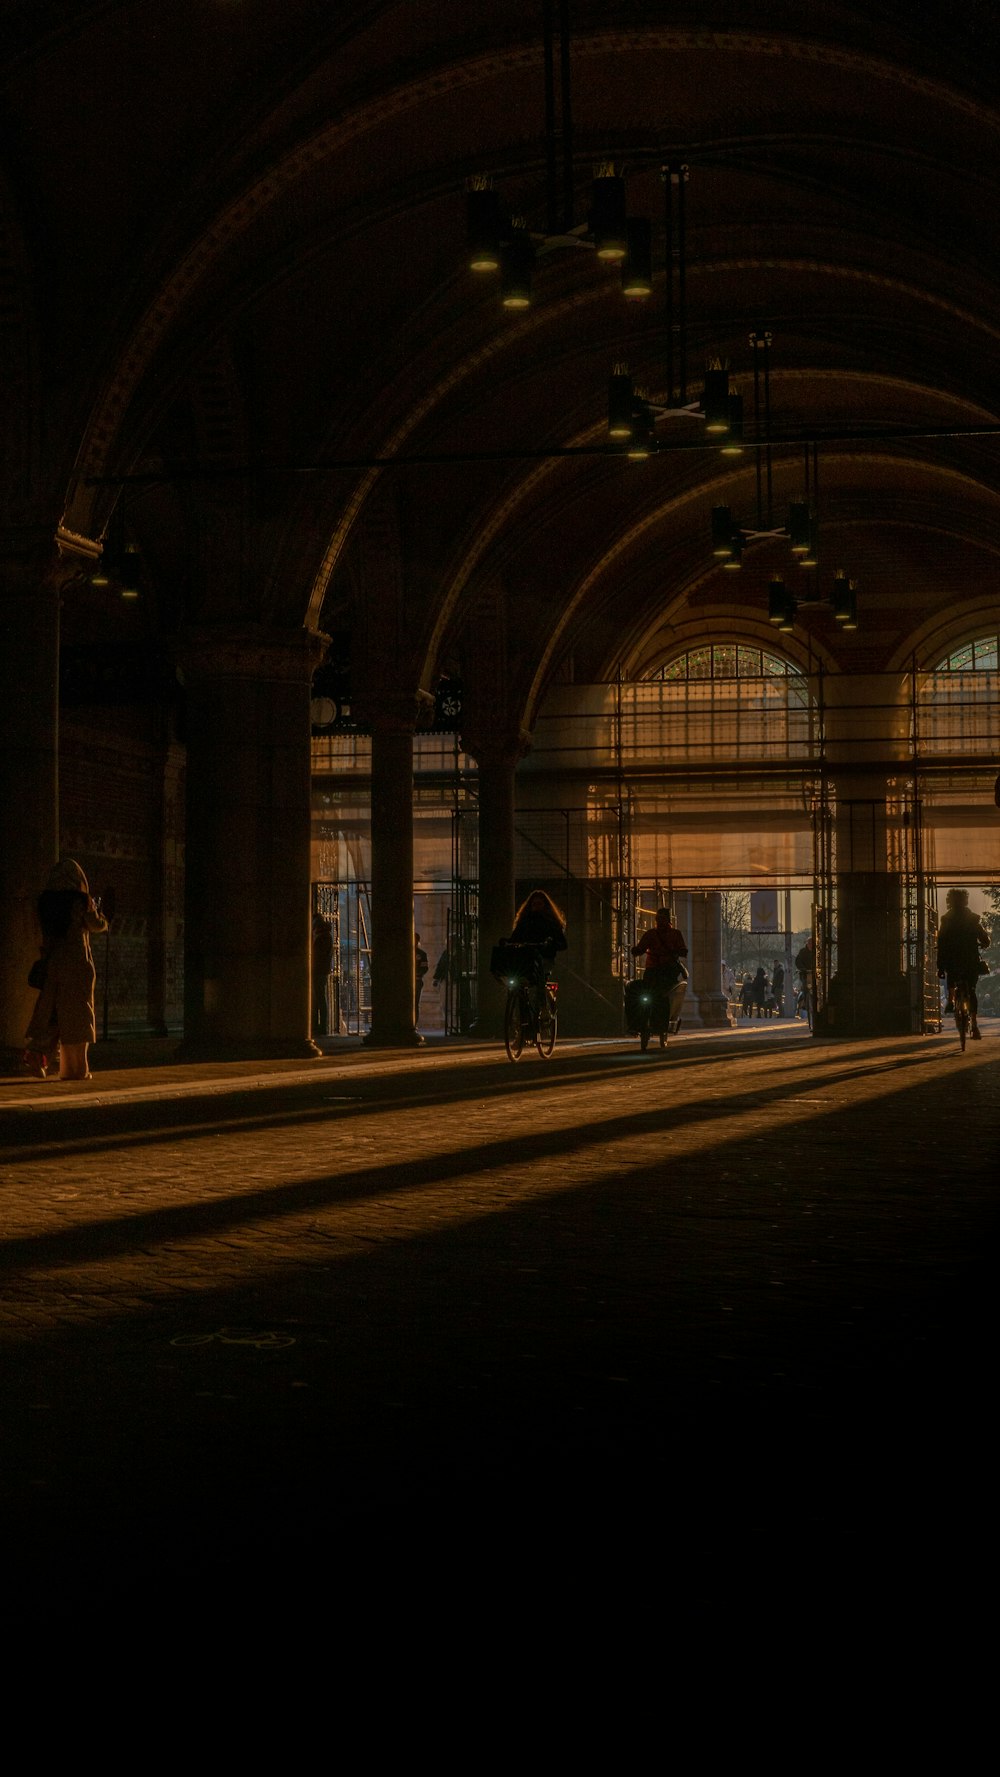 um grupo de pessoas caminhando por uma estação de trem